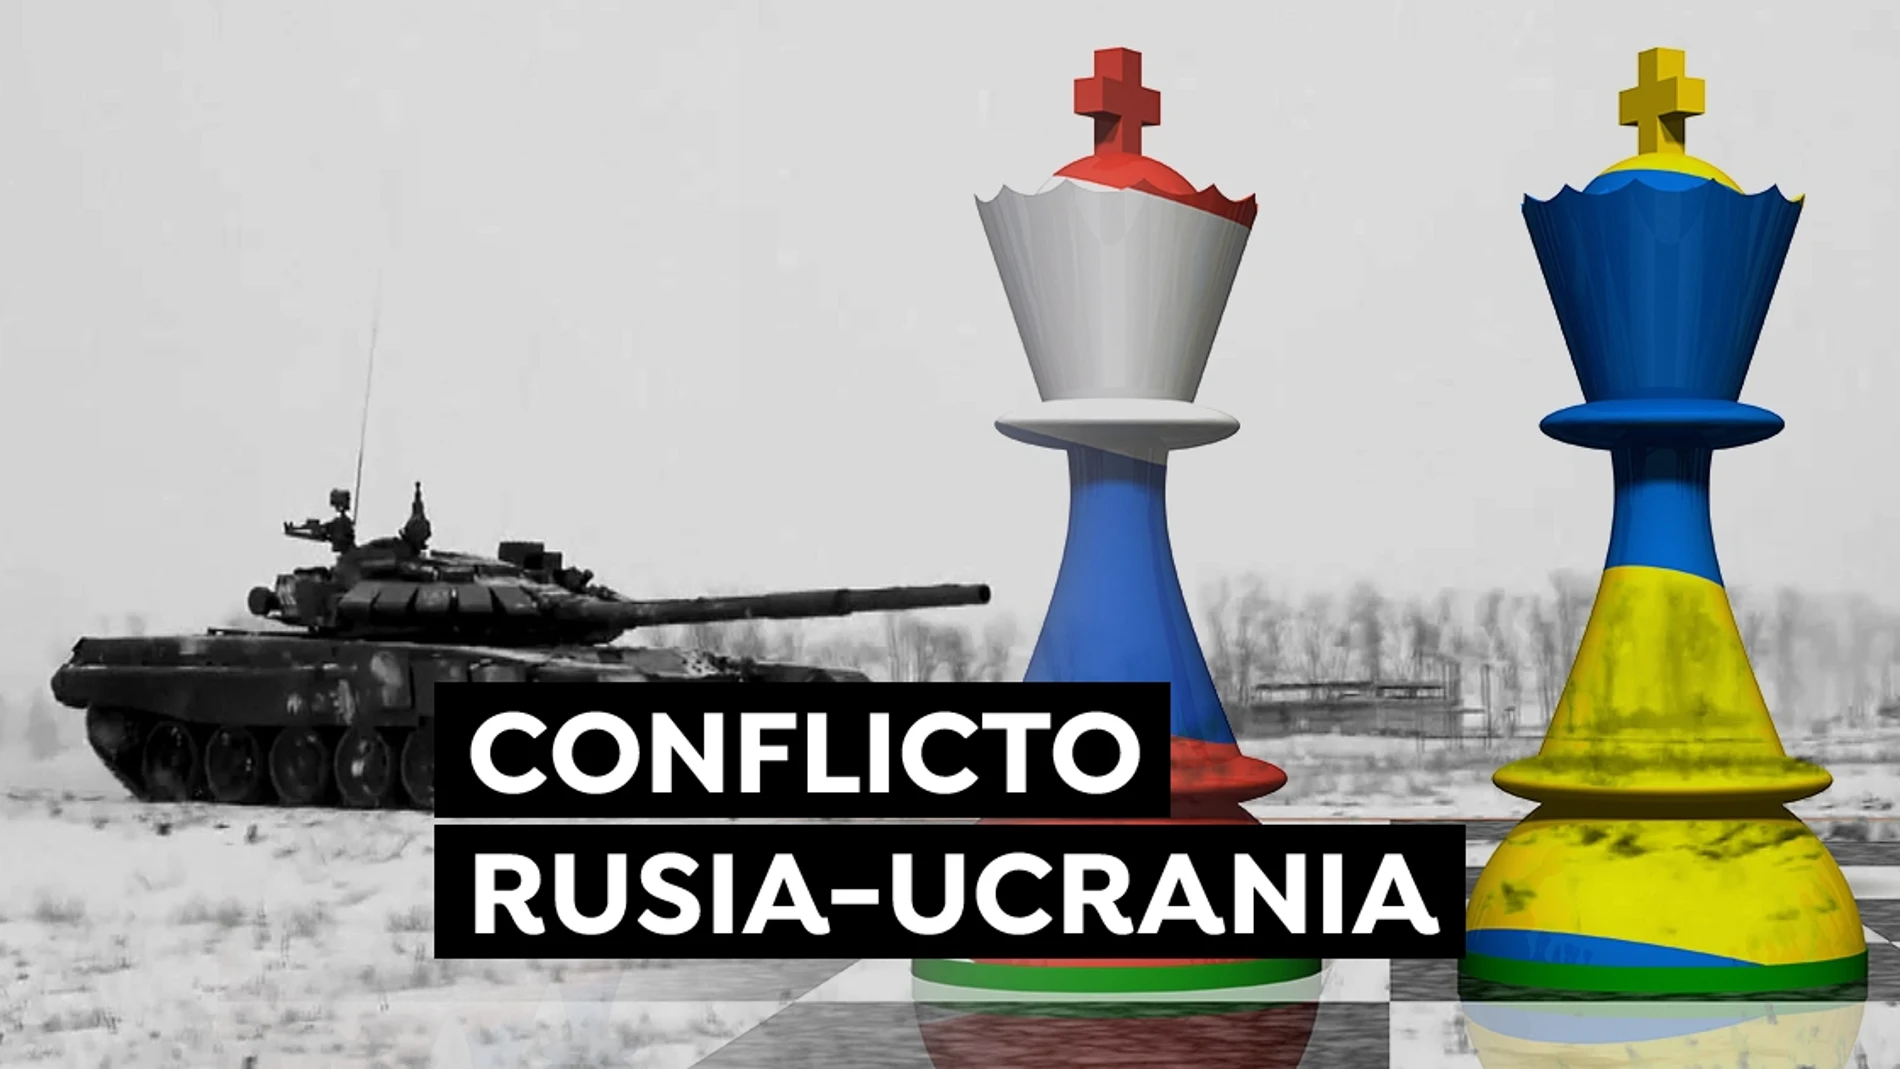 Conflicto Rusia- Ucrania: Última hora de una posible invasión, guerra y noticias hoy